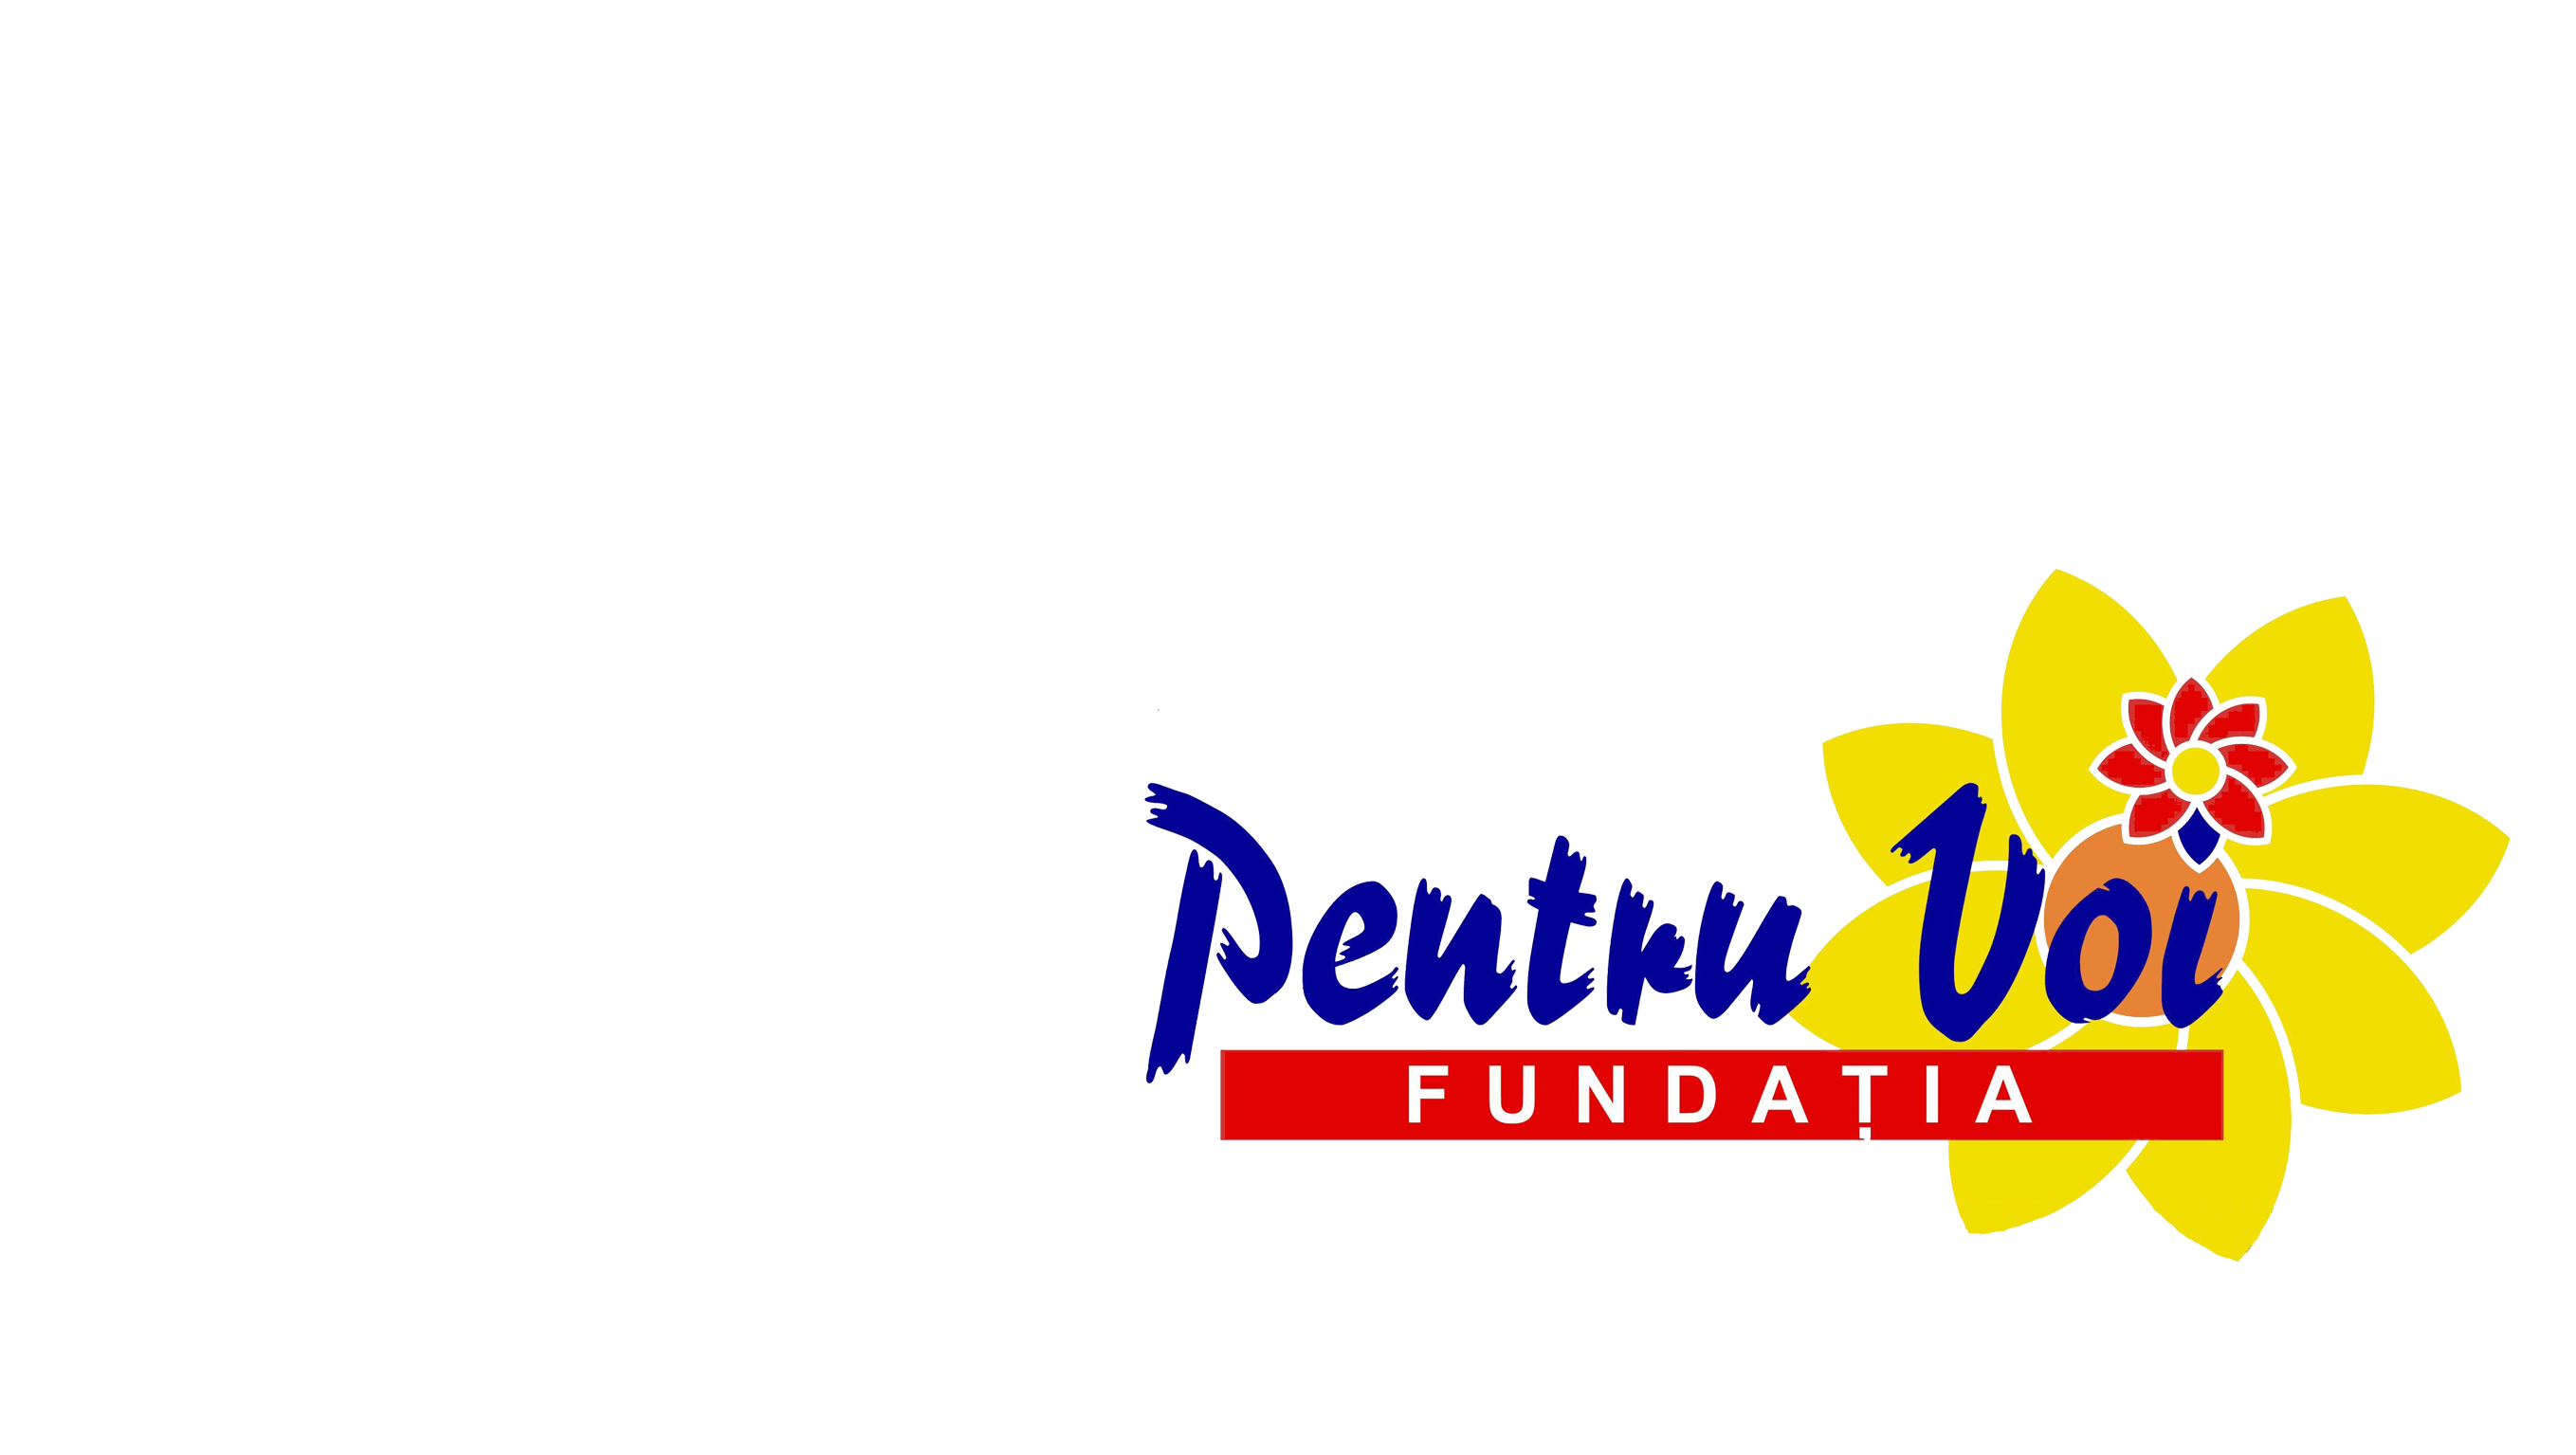 FUNDATIA "PENTRU VOI" logo